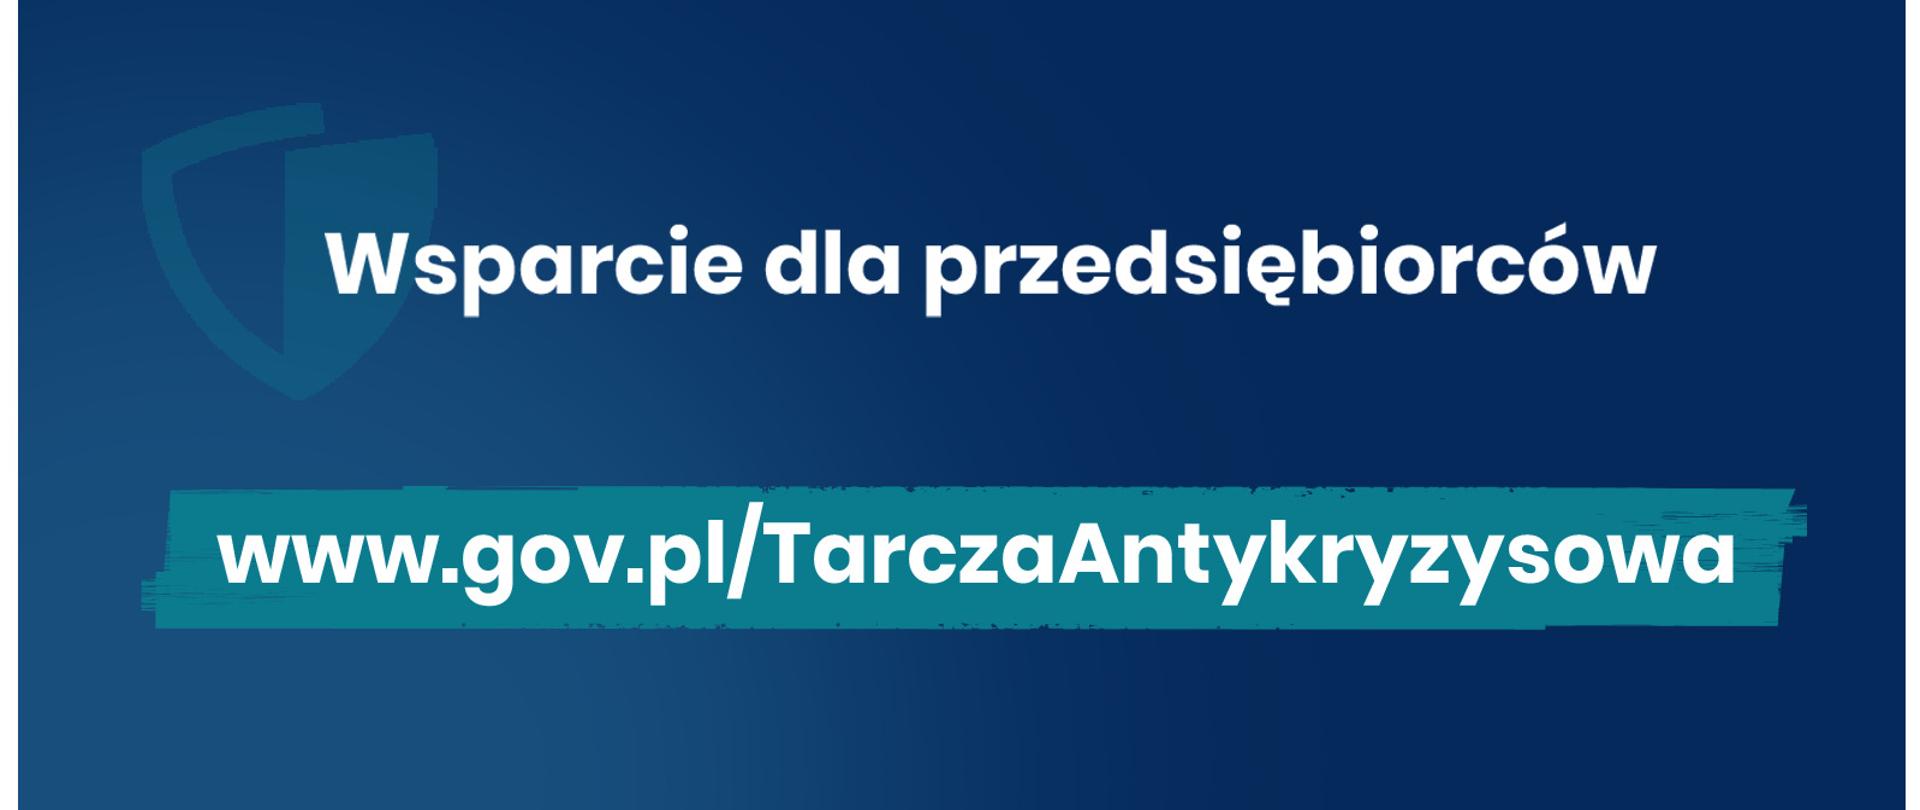 Na grafice napisy "Wsparcie dla przedsiębiorców" oraz "www.gov.pl/TarczaAntykryzysowa"